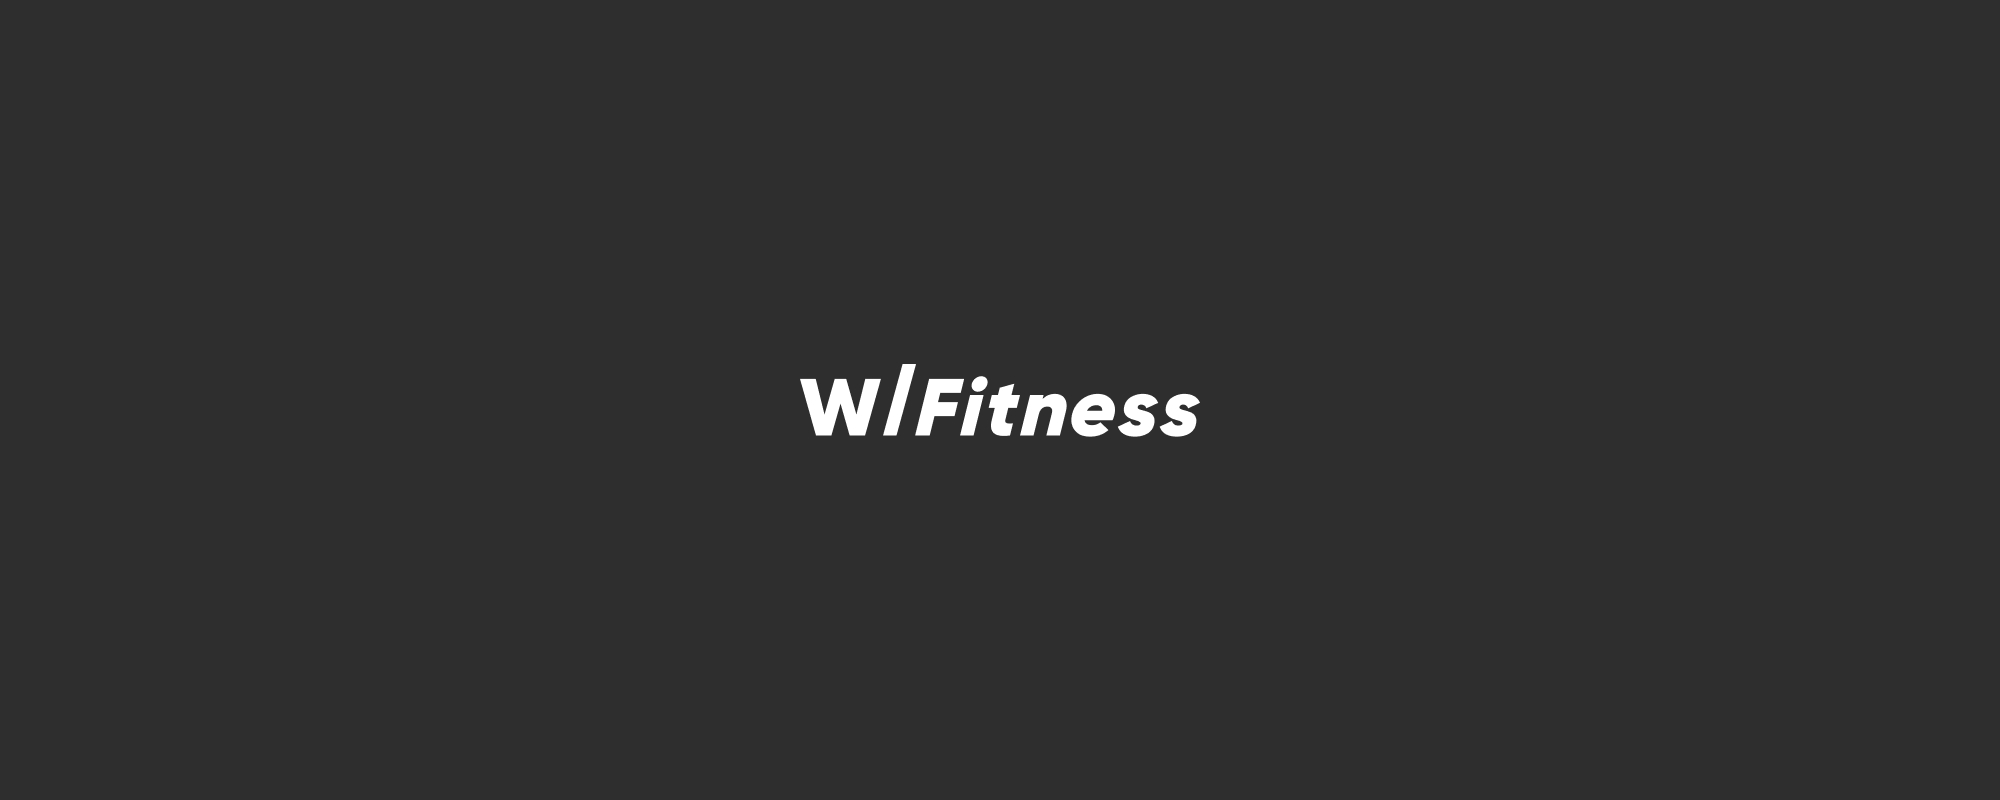 W/Fitness（ウィズフィットネス）とは？